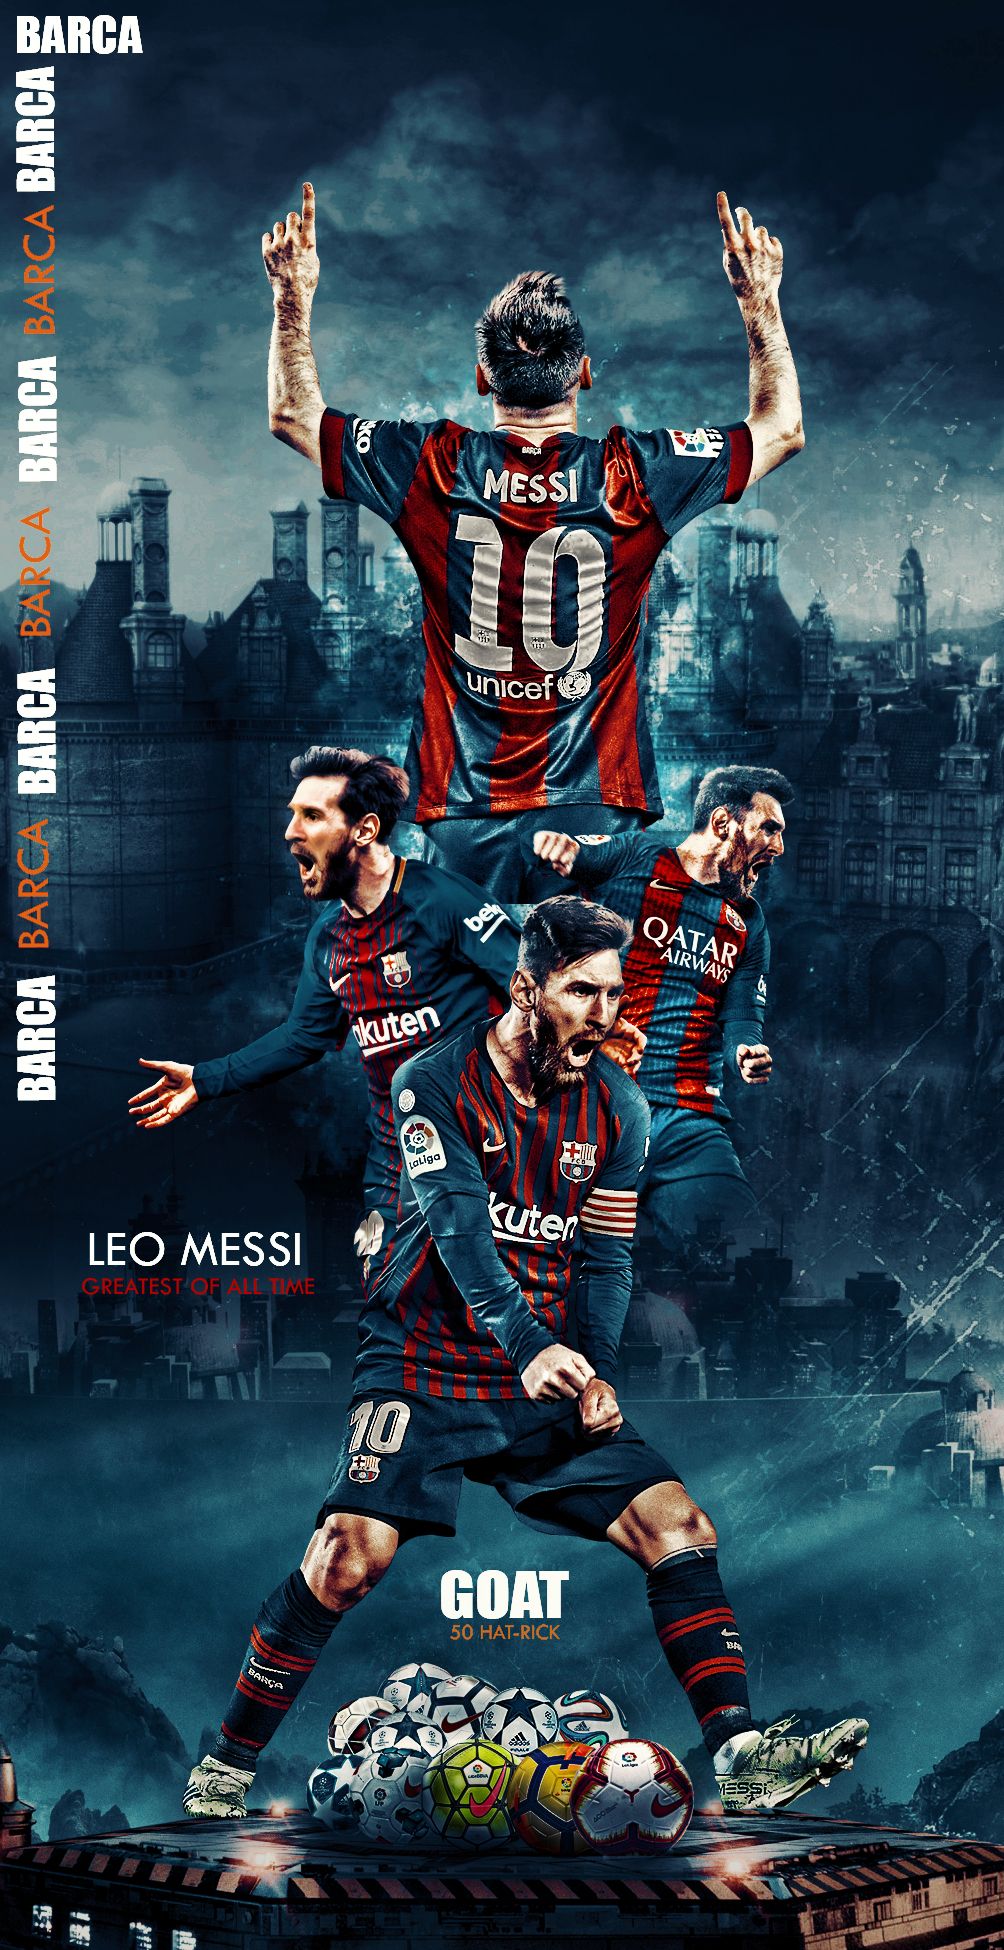 Hình nền Messi đẹp mắt full màn hình, được thiết kế đặc biệt để mang lại trải nghiệm tuyệt vời cho những người hâm mộ sự nghiệp giàu thành tích của siêu sao này.